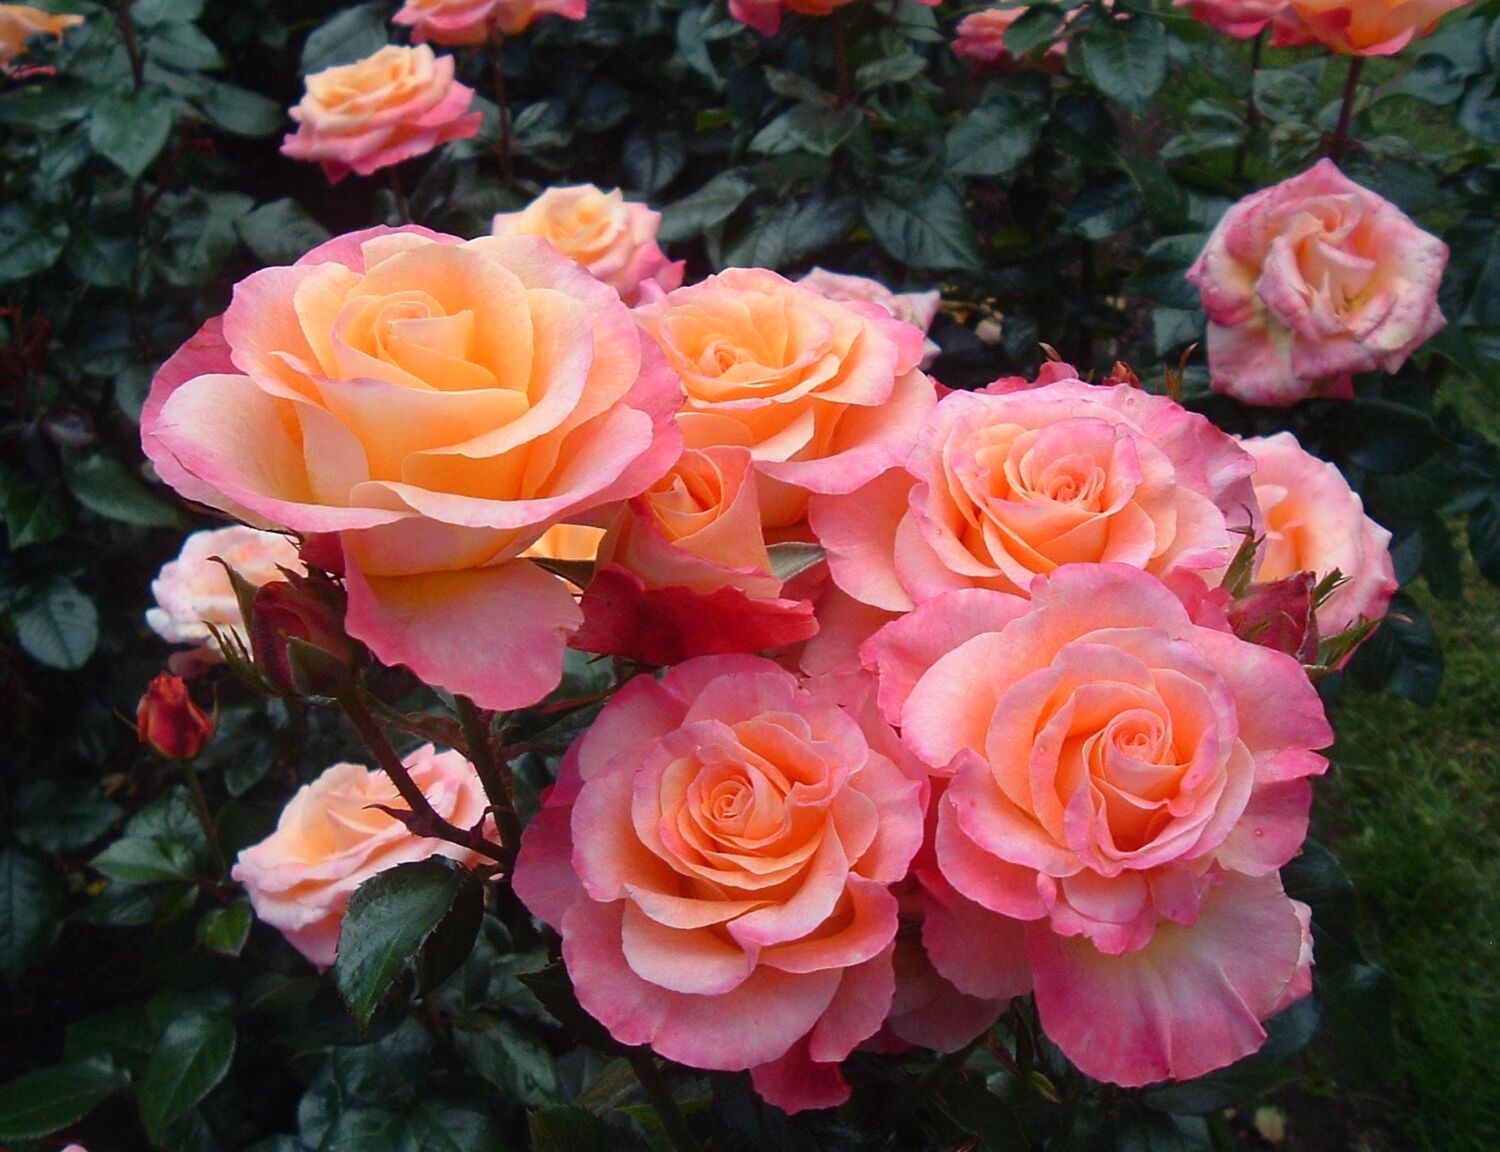 Клумба с розами: оформление, схема и сочетание. Что можно посадить вместе с ними? | VK